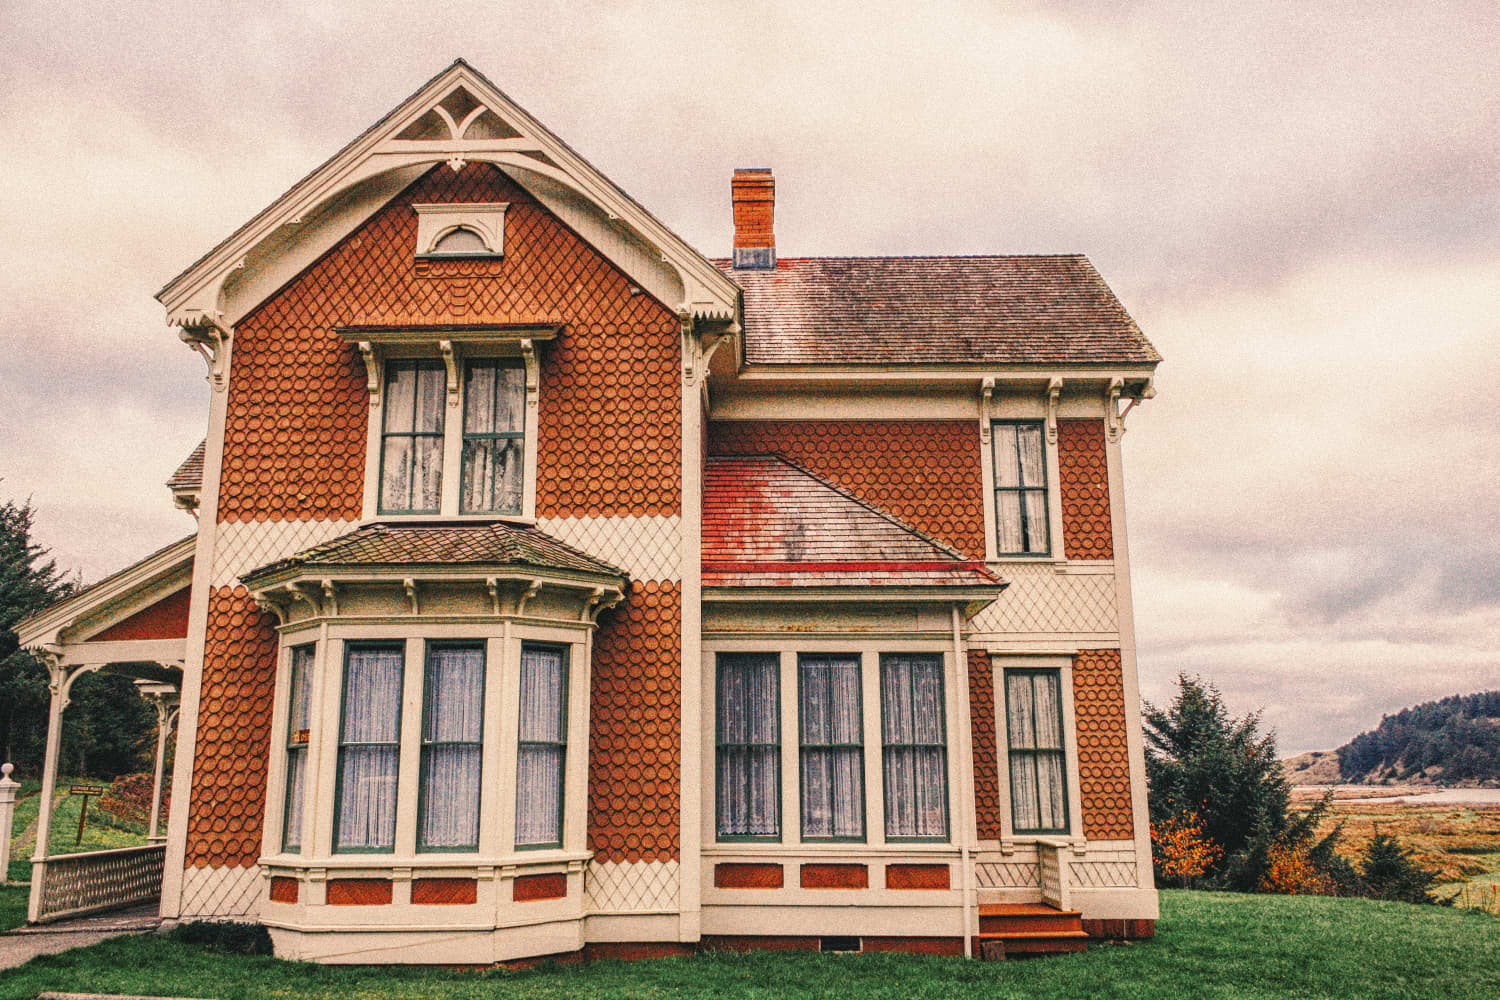 Espectacle de terror: es podria comprar una casa encantada sense saber-ho